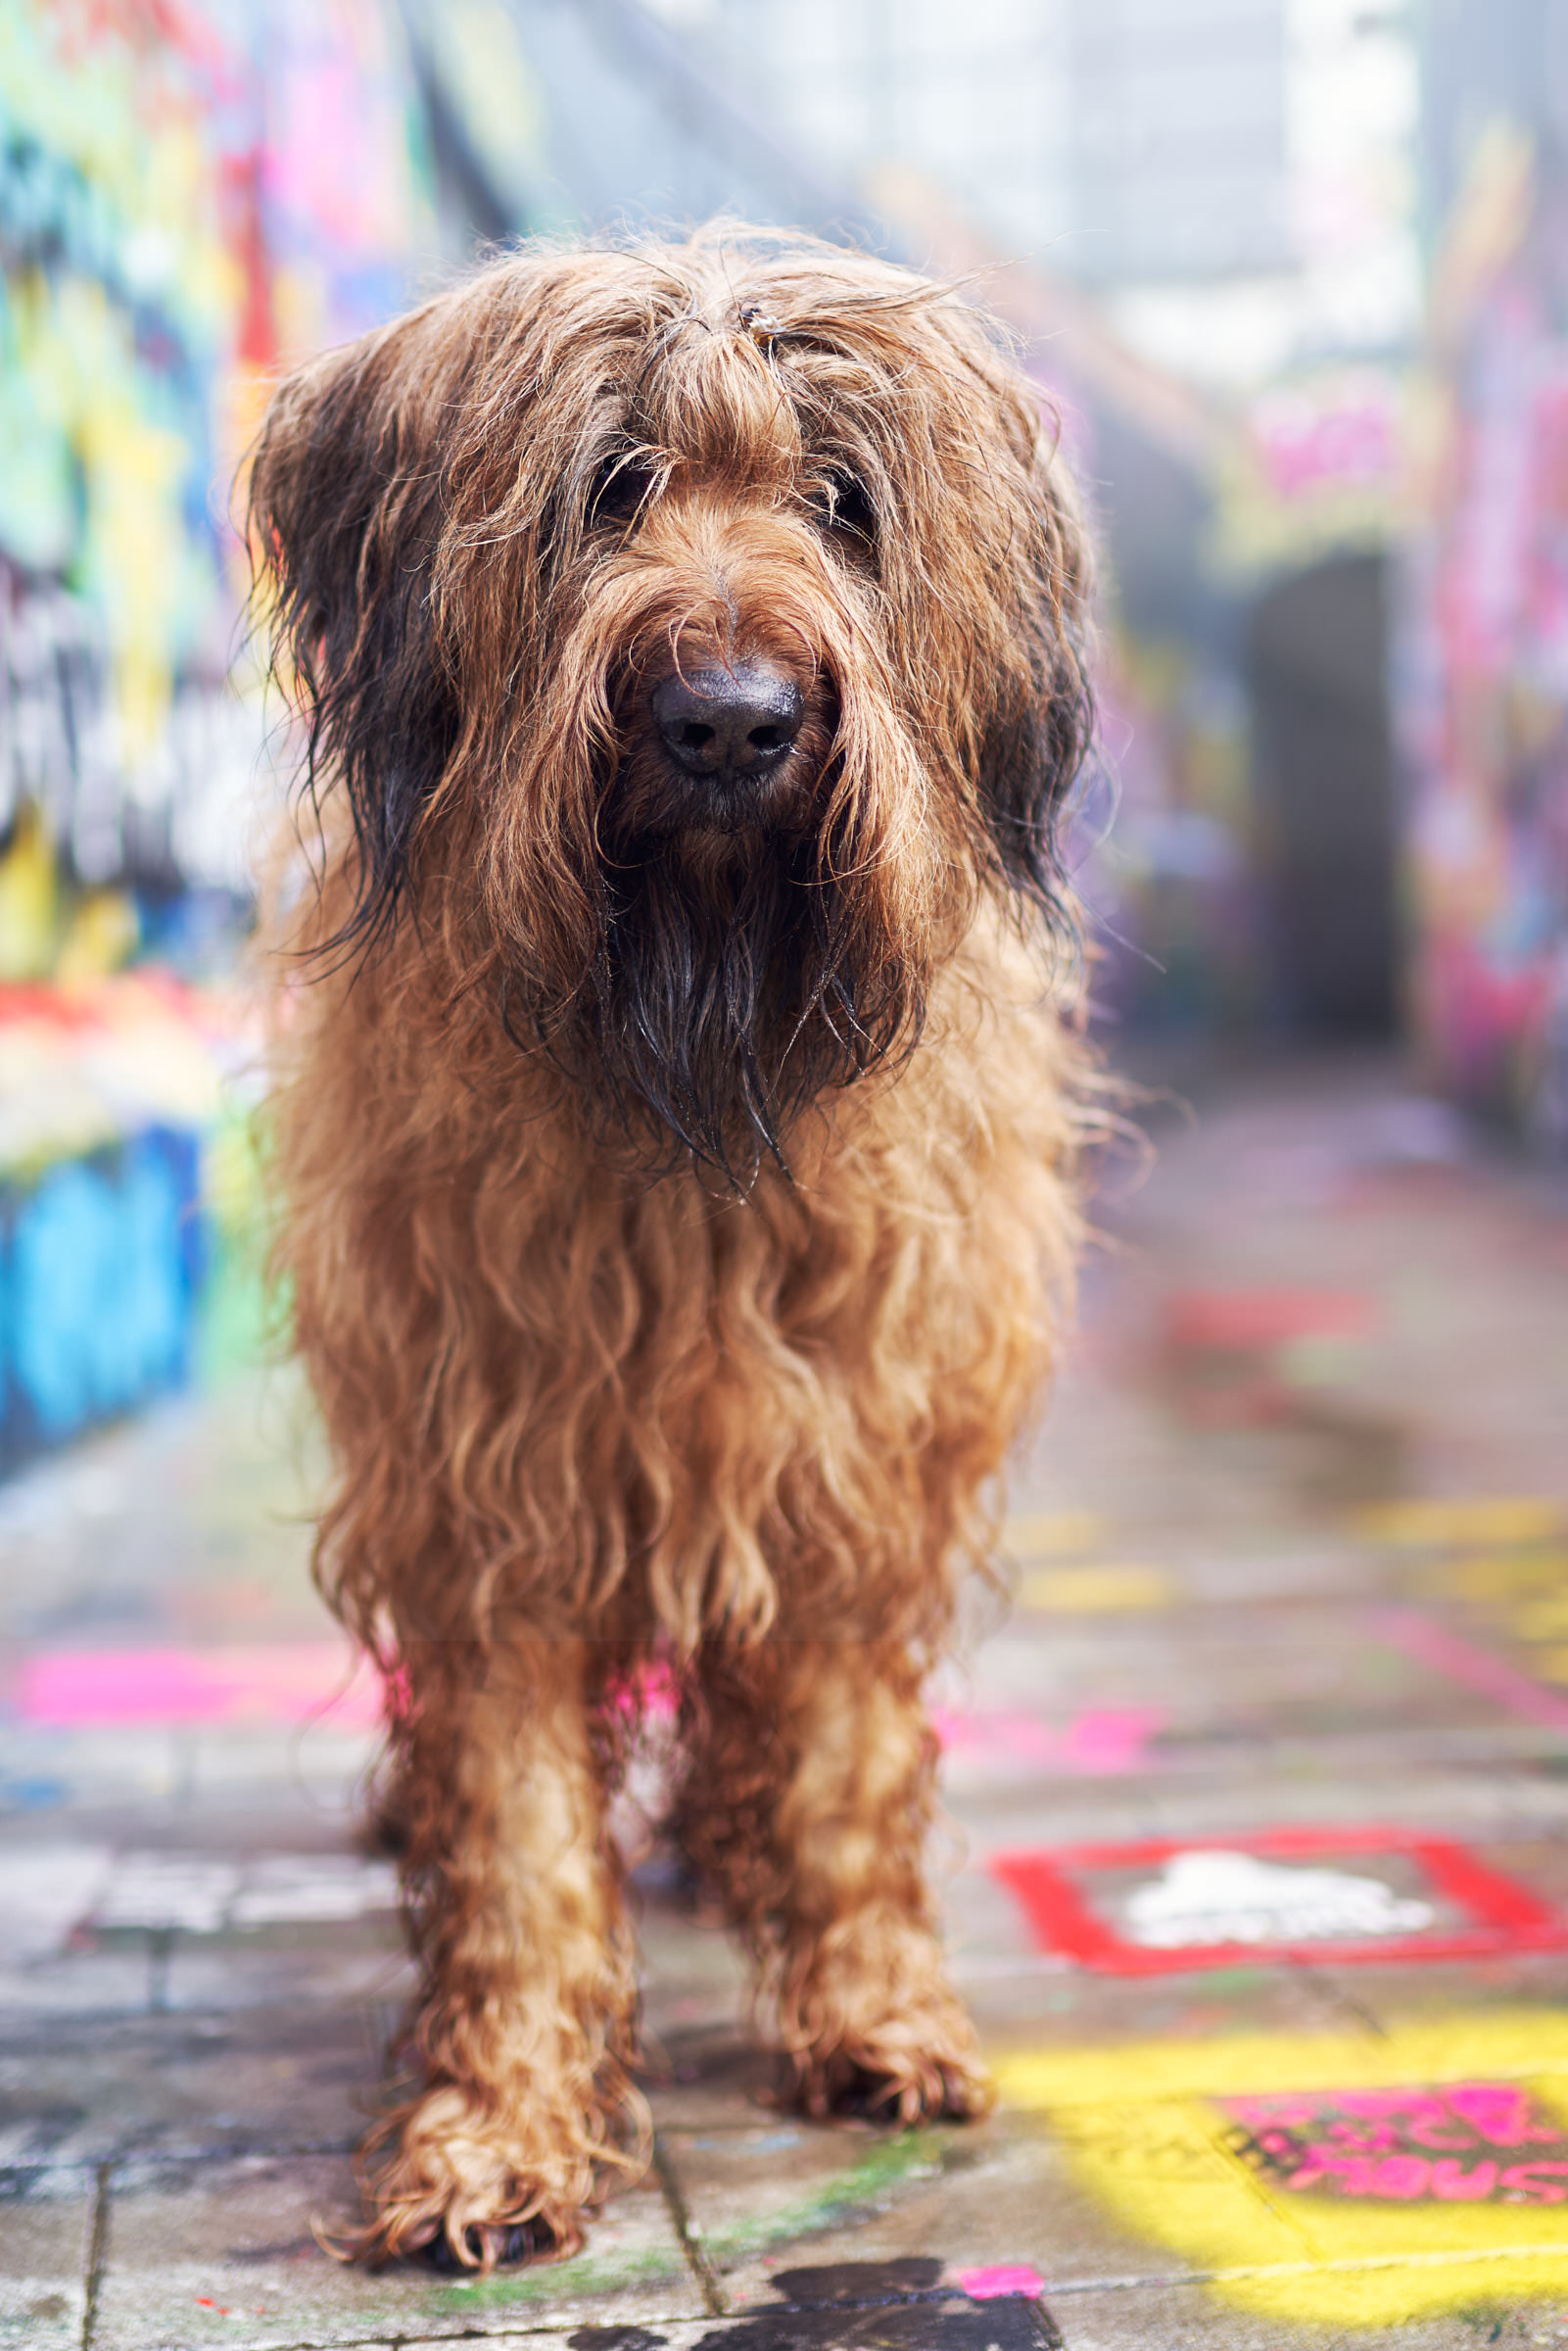 Hund in der Stadt mit Graffiti